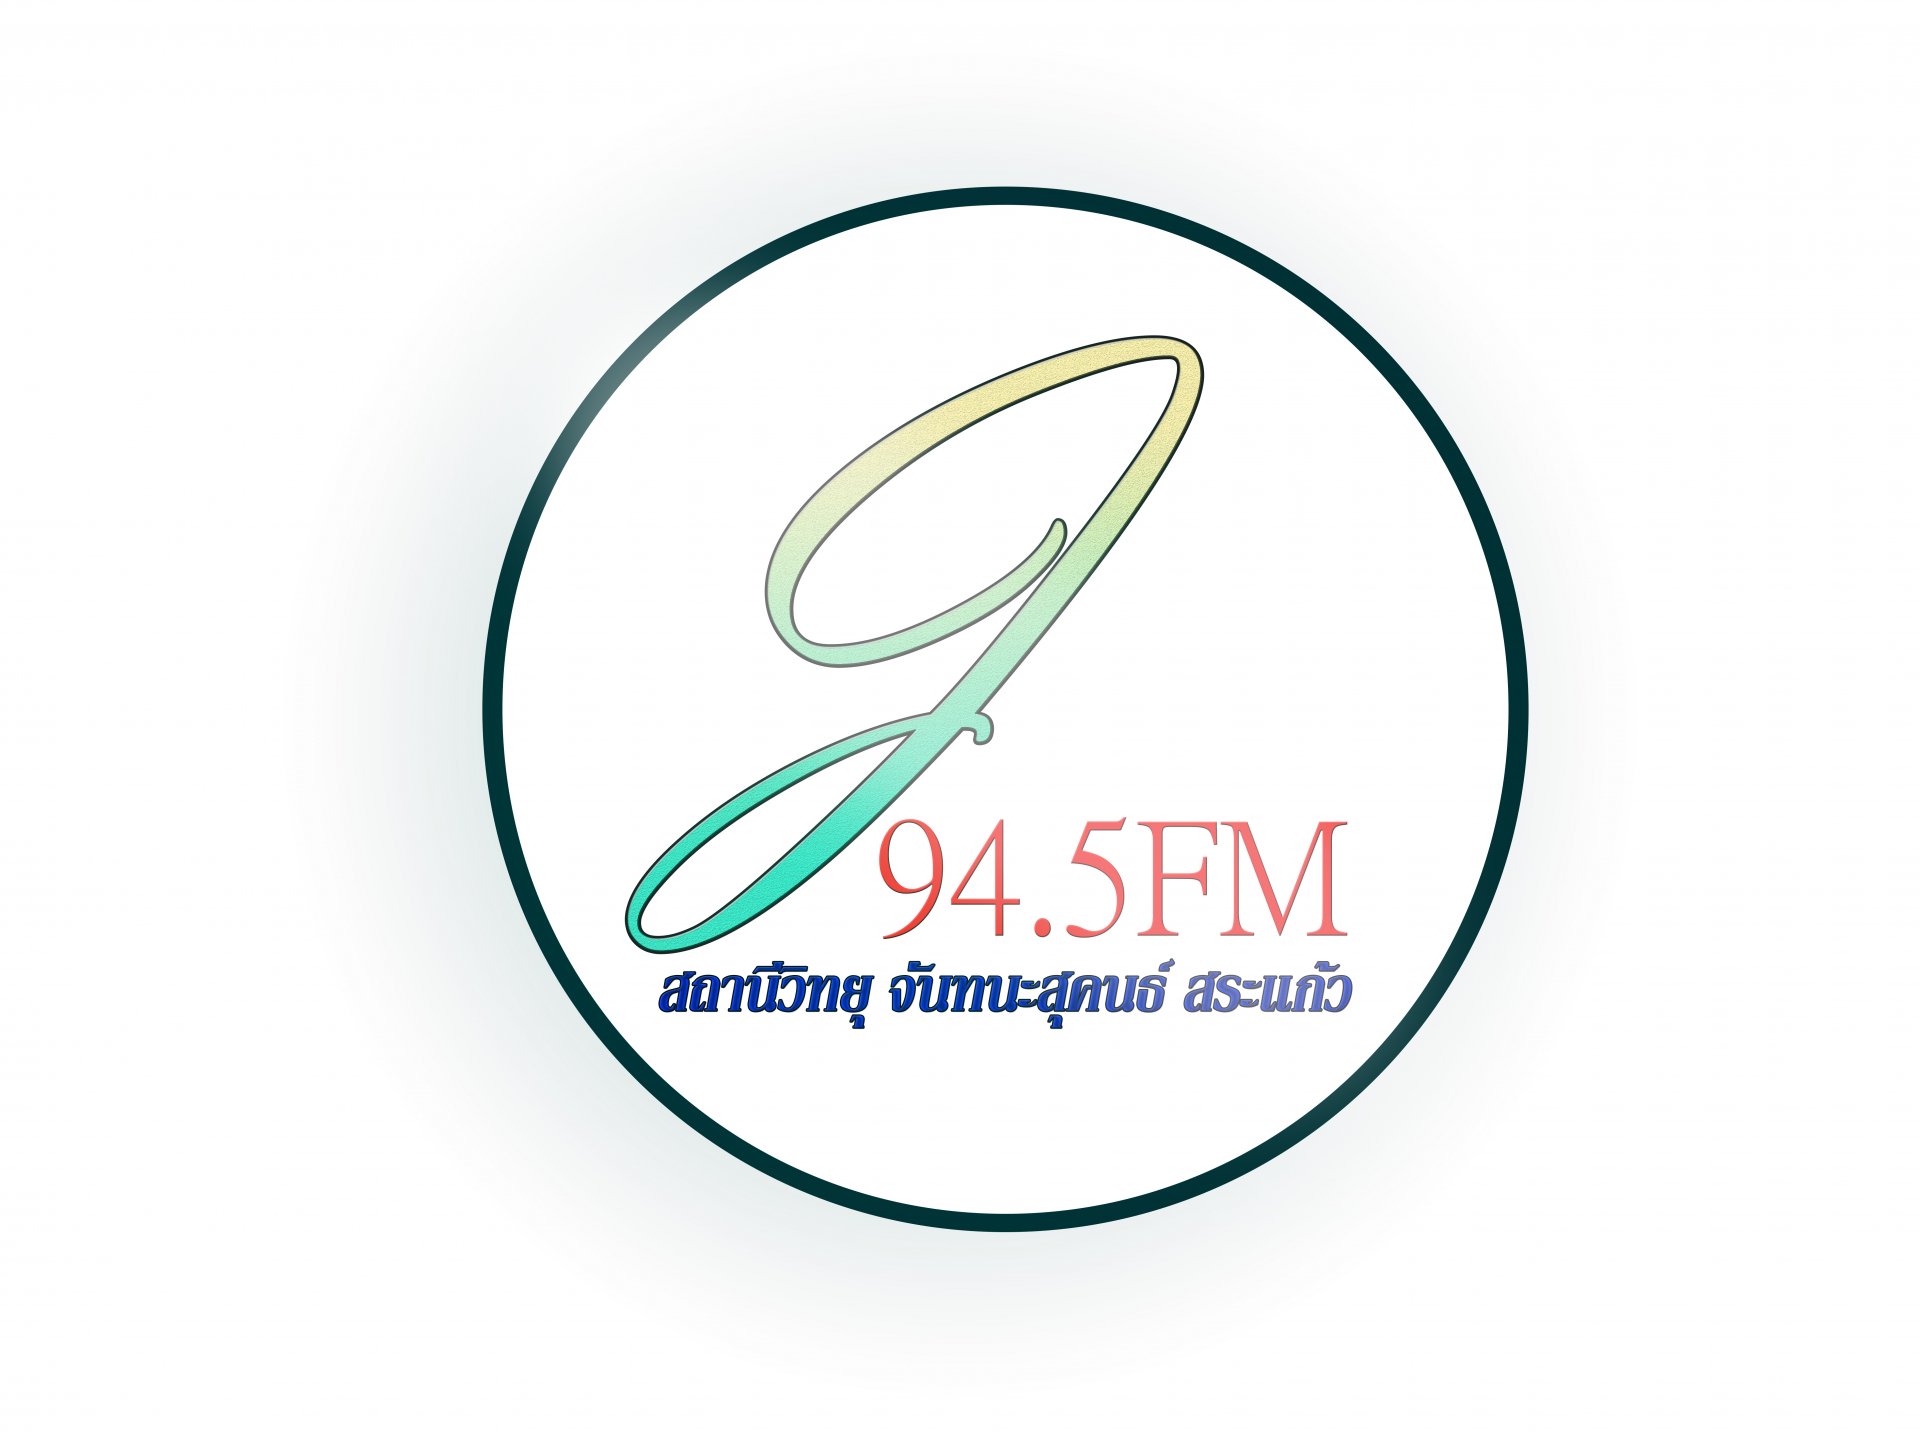 สถานีวิทยุจันทนะสุคนธ์ FM 94.50 MHz สระแก้ว